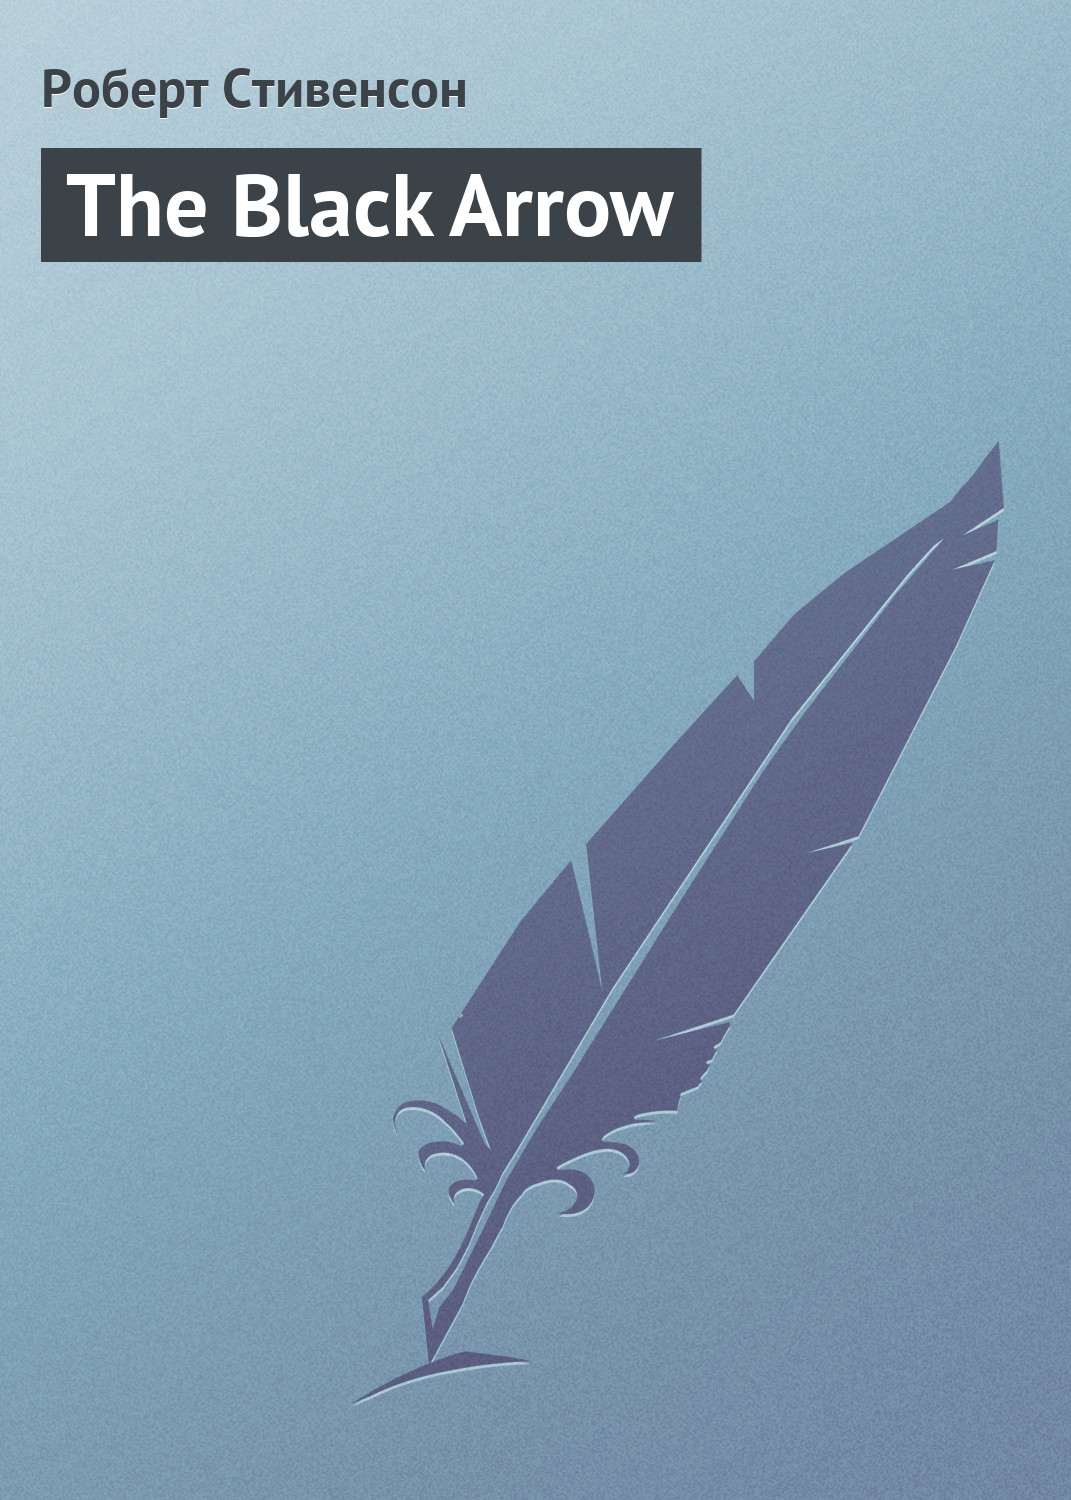 Книга The Black Arrow из серии , созданная Роберт Стивенсон, может относится к жанру Литература 19 века, Зарубежные приключения, Зарубежная классика, Исторические приключения. Стоимость электронной книги The Black Arrow с идентификатором 134375 составляет 29.95 руб.